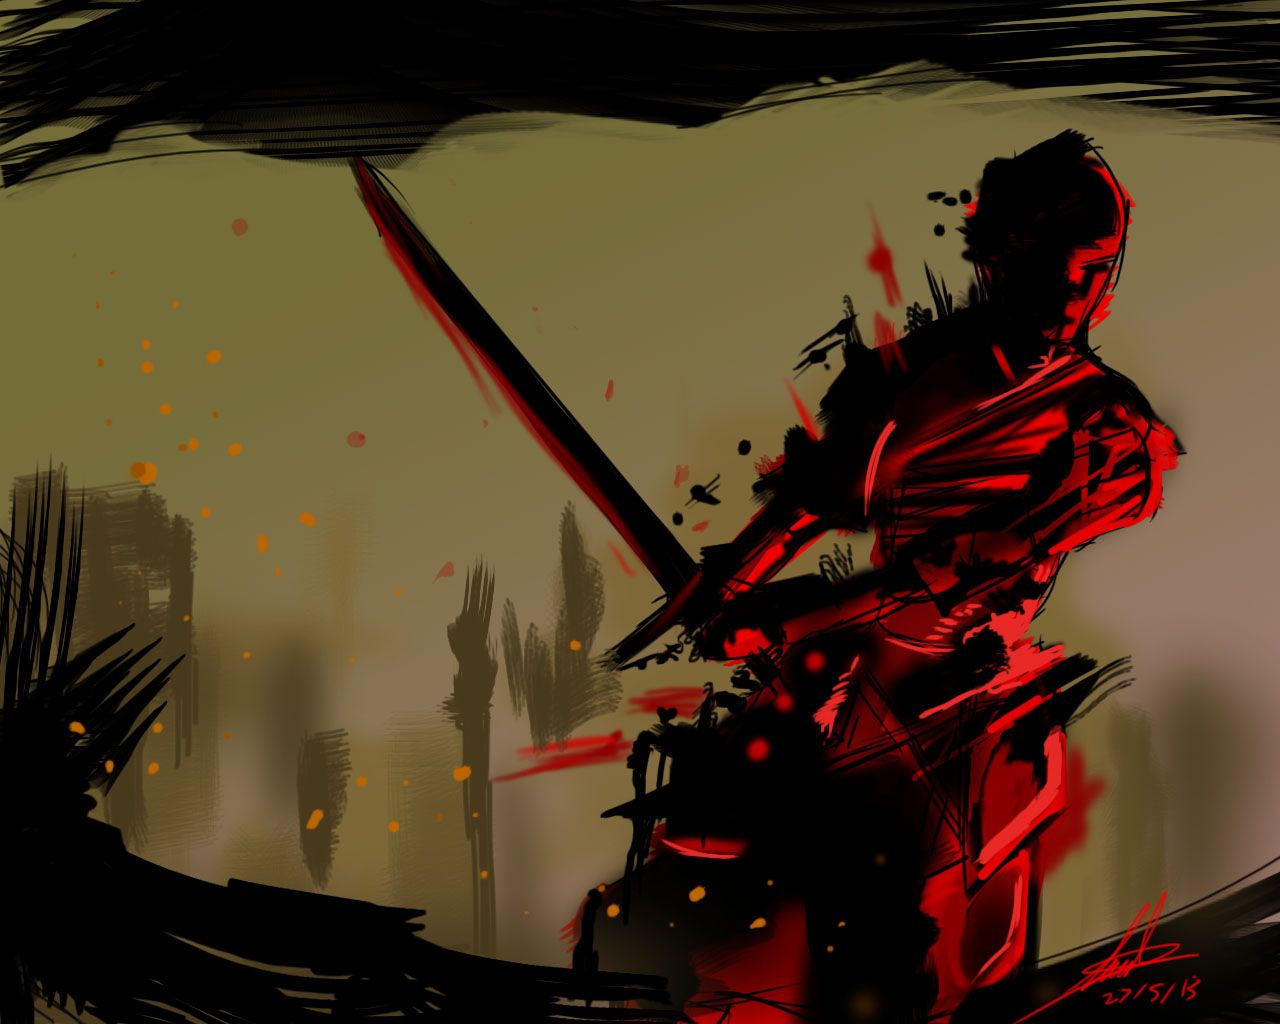 The bloody samurai by tatsumaru7 on Newgrounds